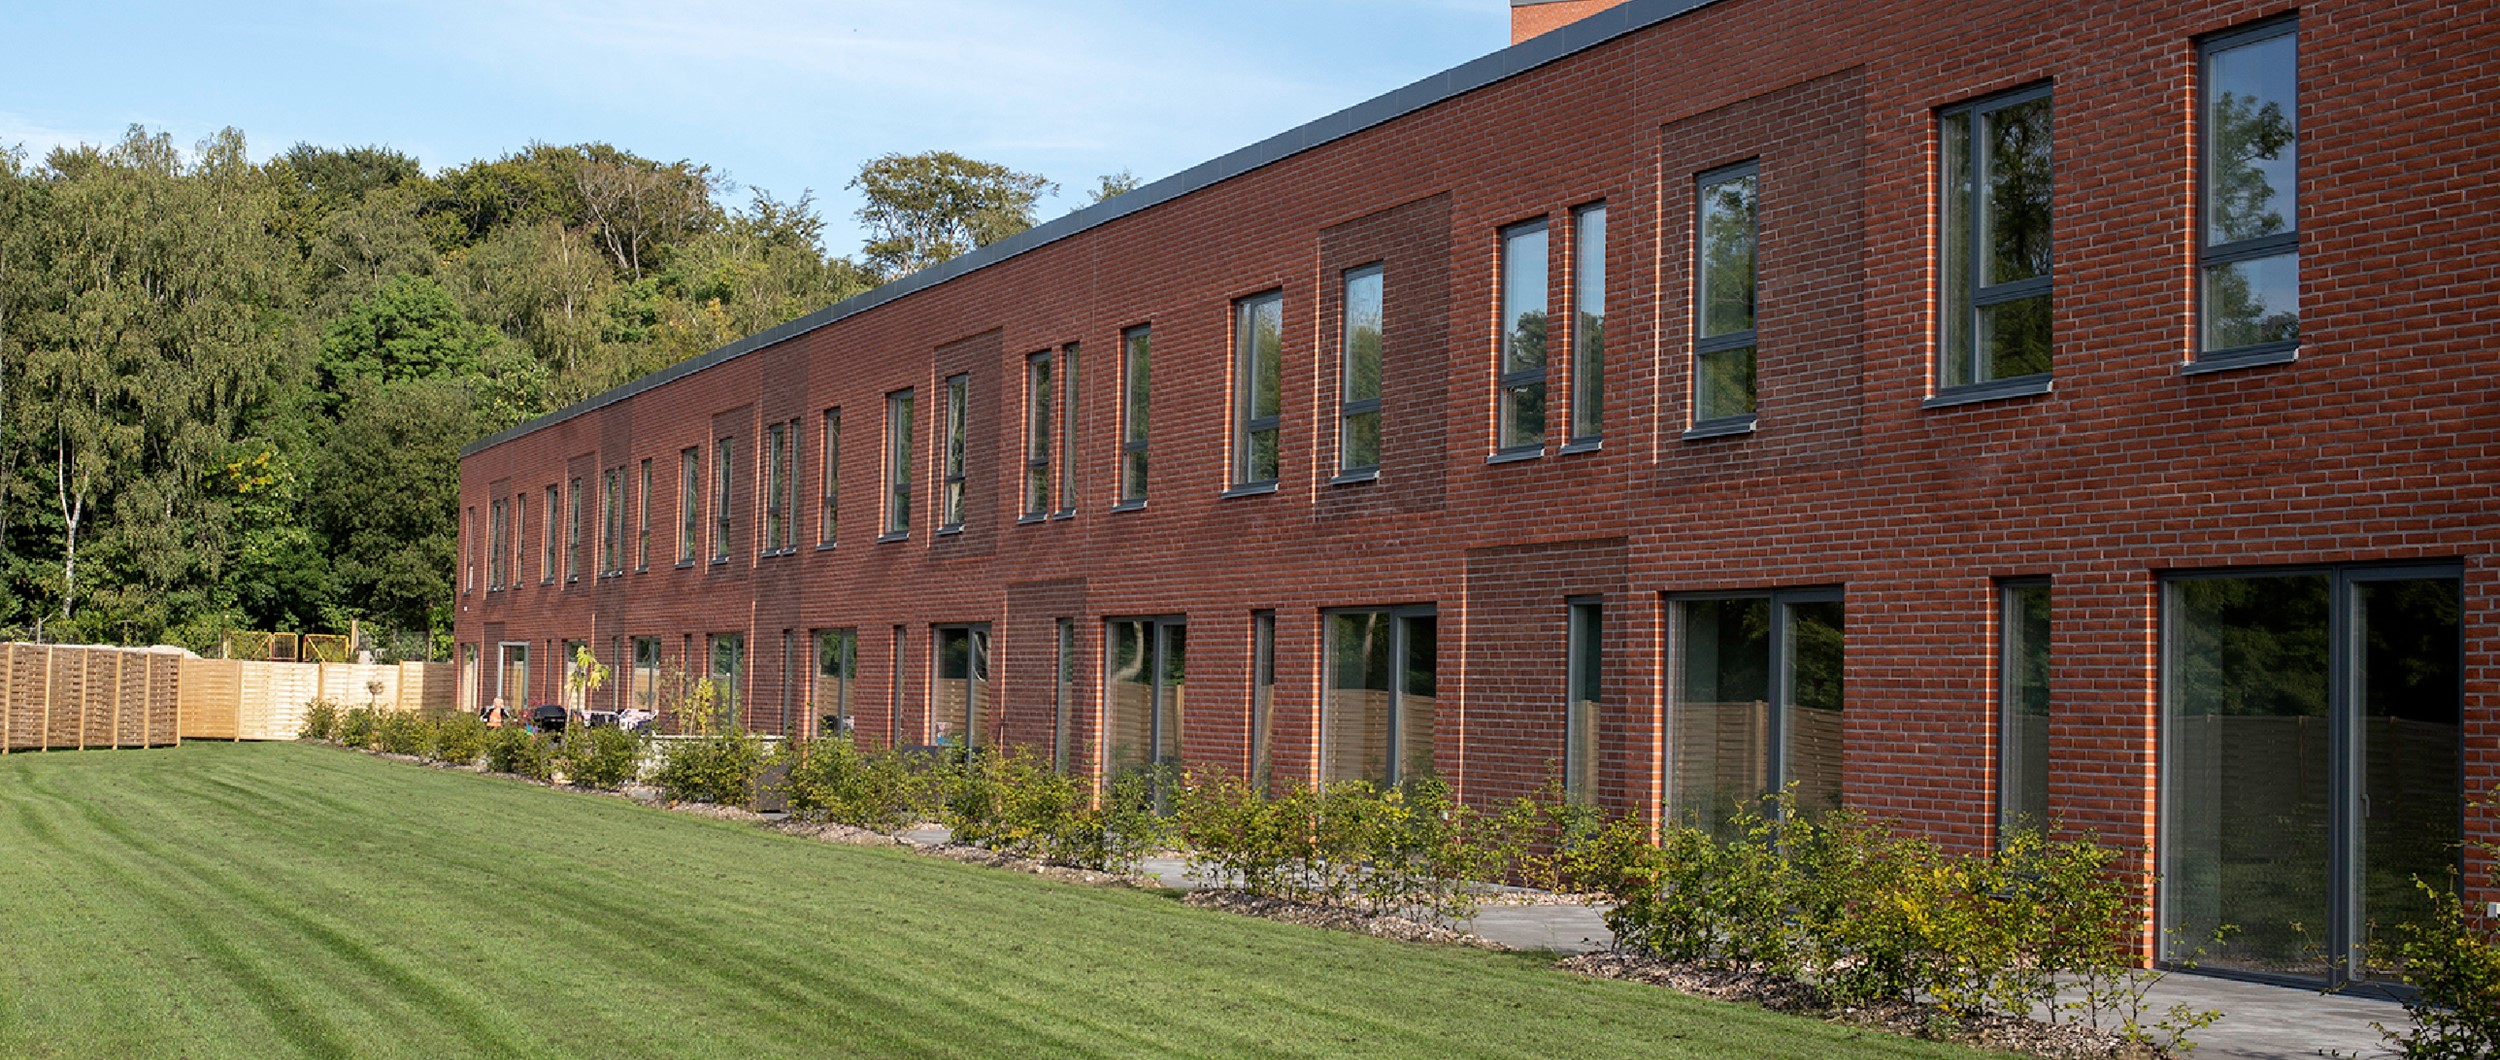 Alle boliger er orienteret omkring et grønt haverum. I sit arkitektoniske udtryk spiller bygningerne op mod den gamle industribygning.